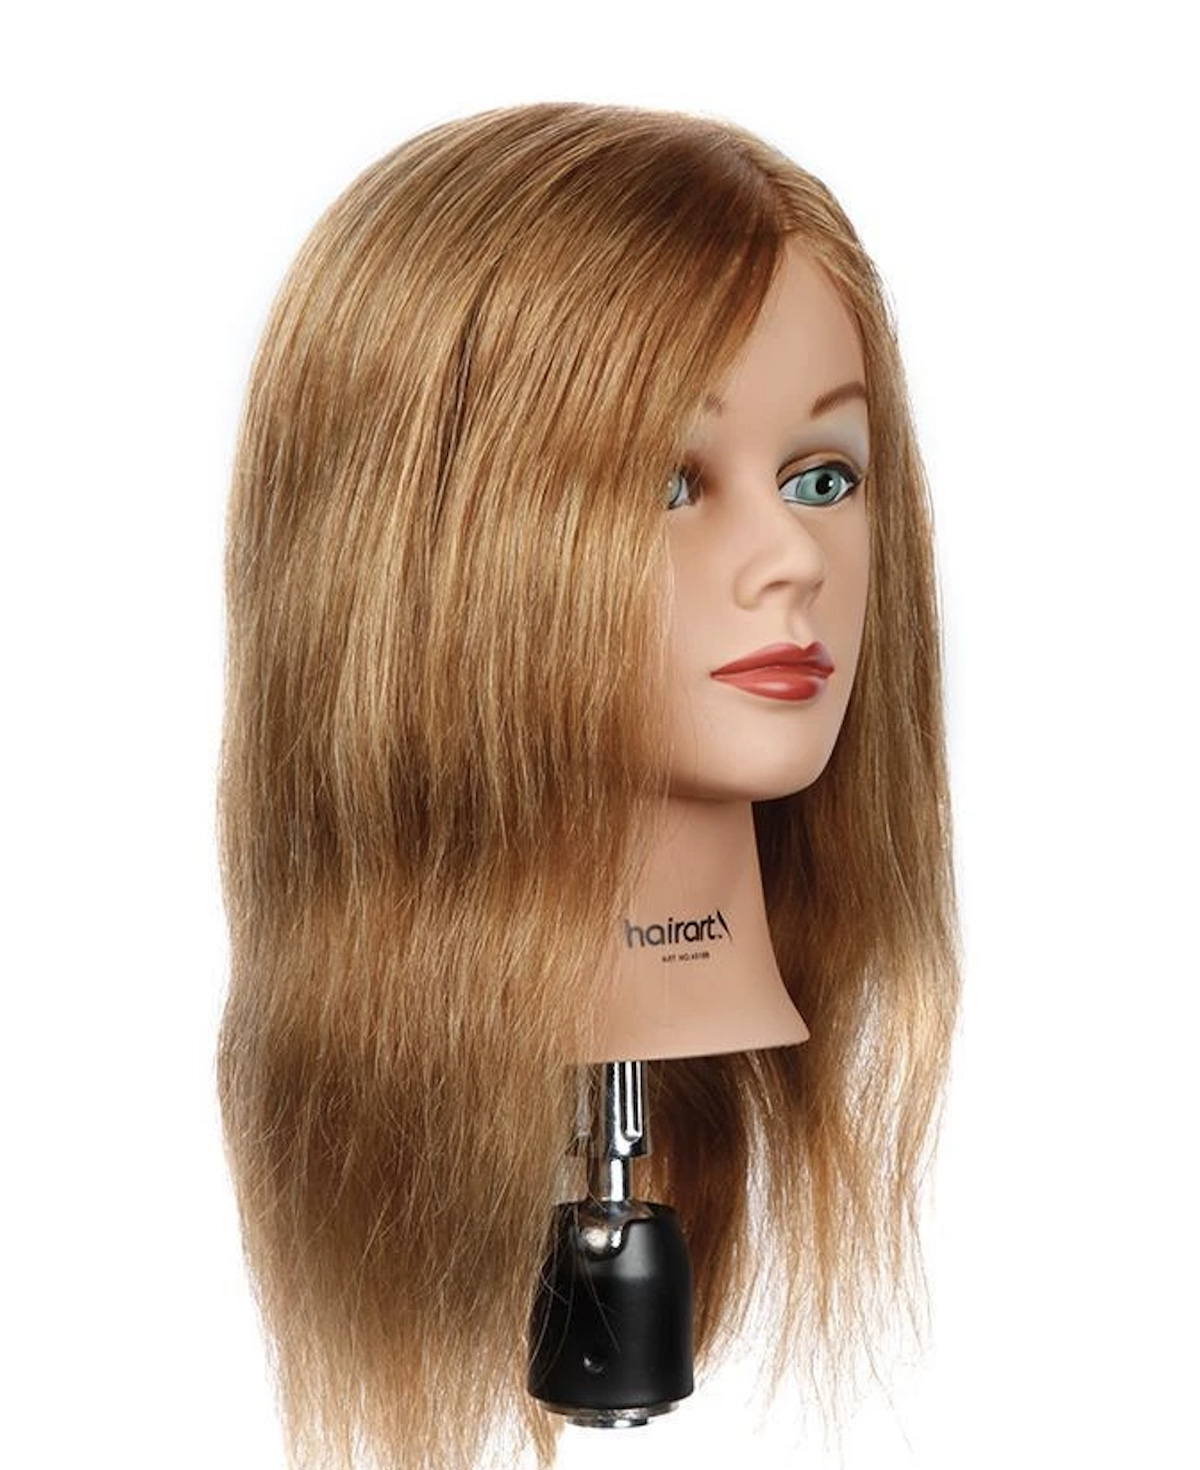 HairArt Mannequin Head Brooke - Light Brown 